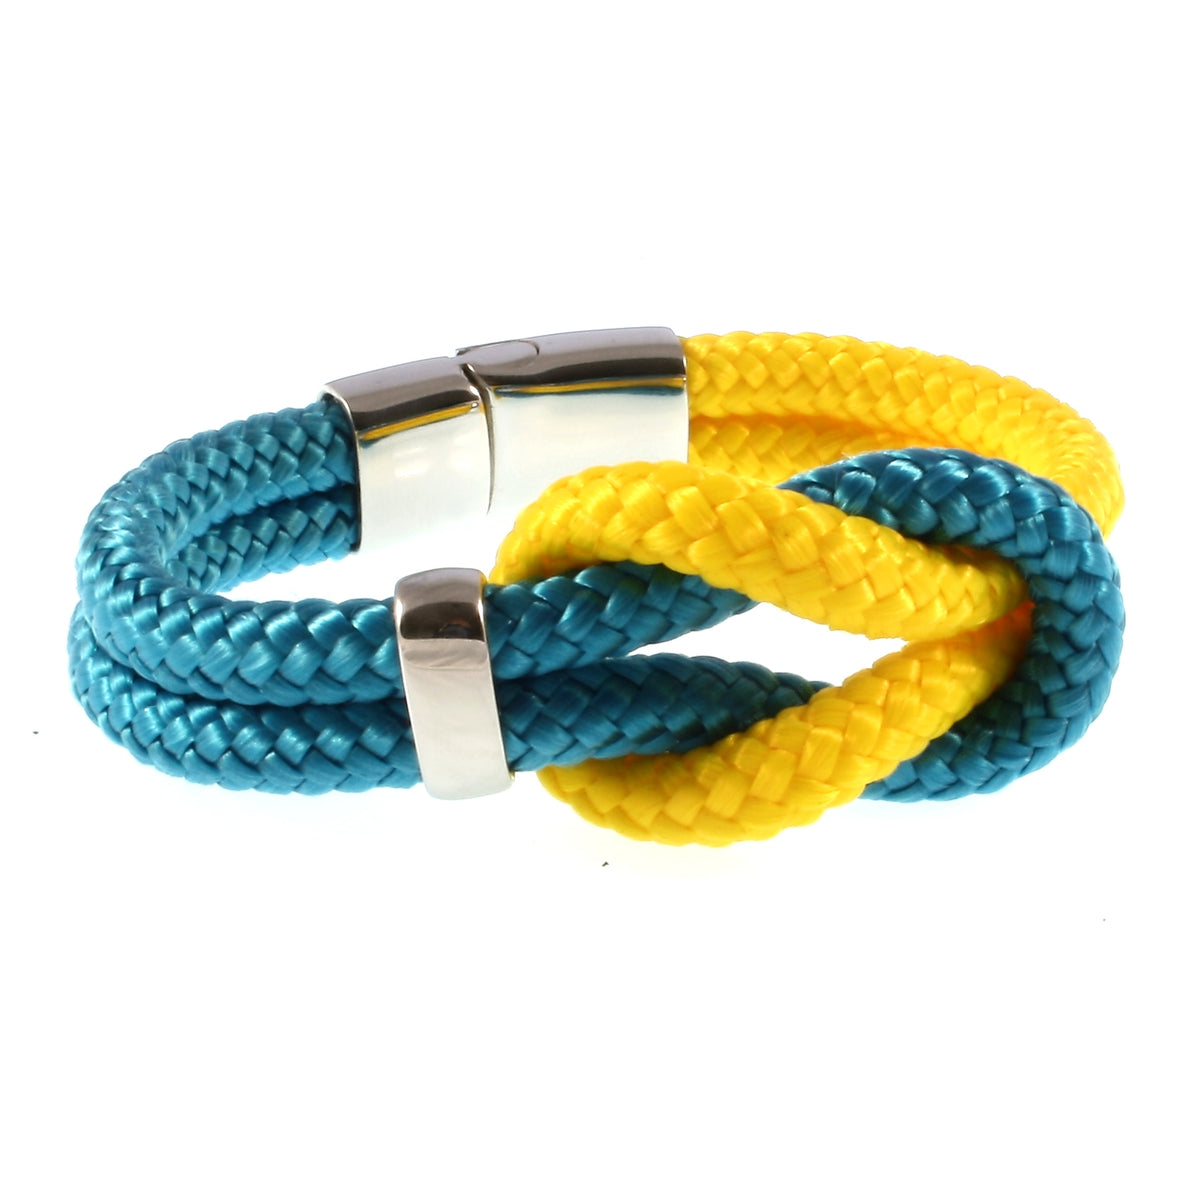 Damen-Segeltau-armband-pure-blau-gelb-silber-geflochten-Edelstahlverschluss-vorn-wavepirate-shop-st